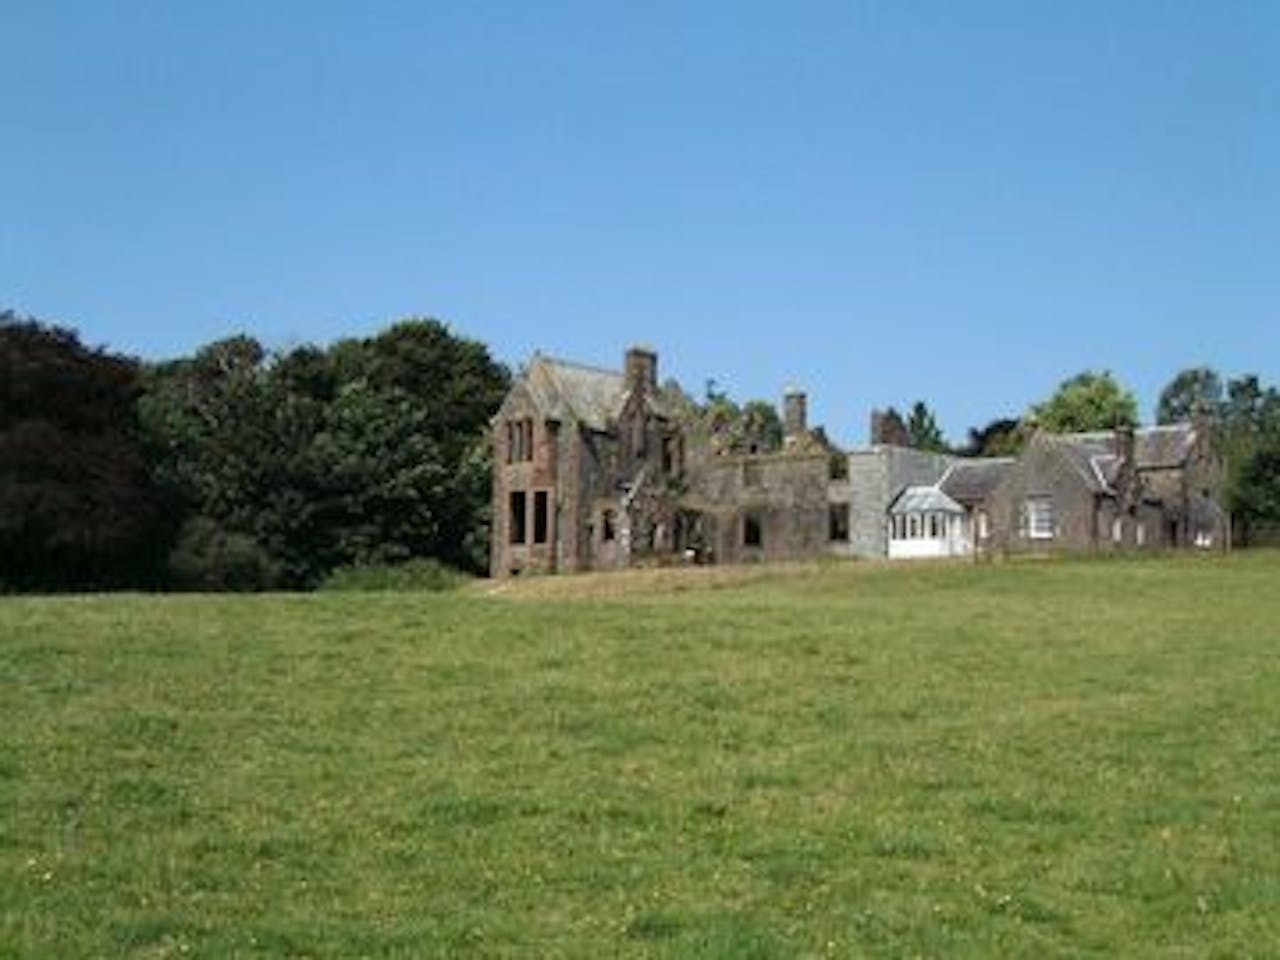 Glanlair House gezien vanaf een afstand met een groot grasveld